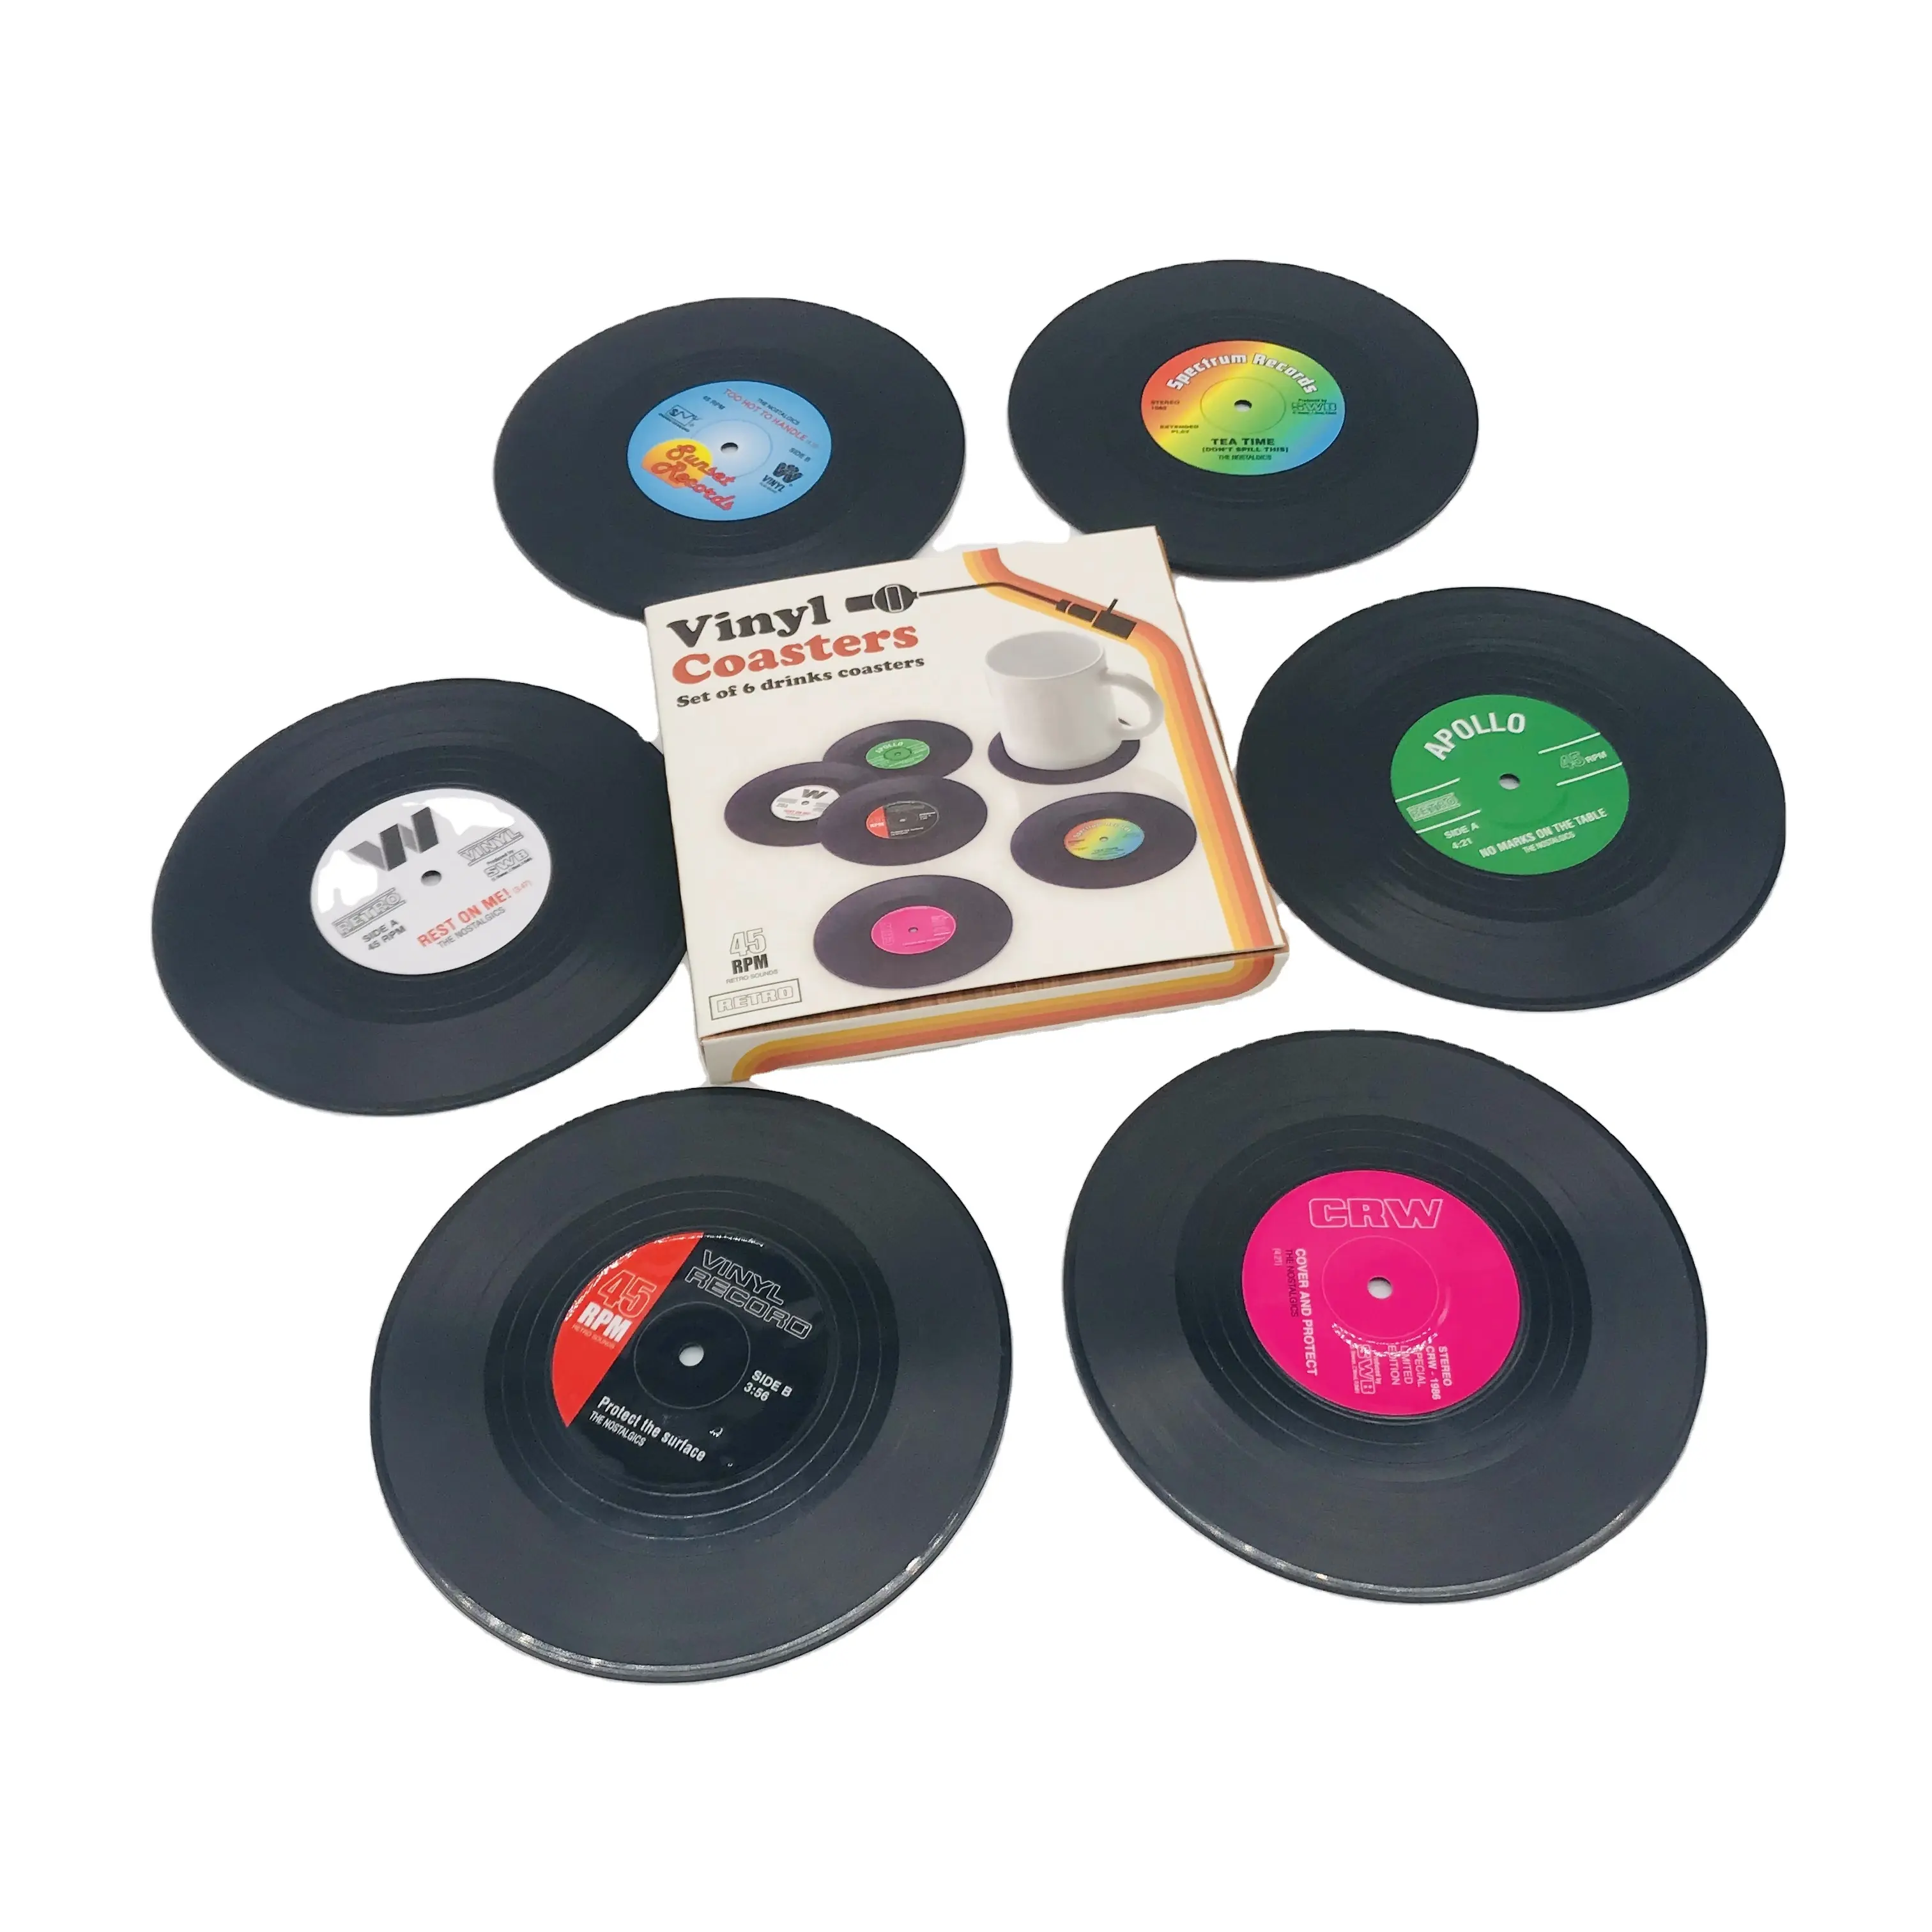 Posavasos para bebidas con caja de regalo, juego de 6 posavasos Retro coloridos de disco de vinilo con etiquetas divertidas